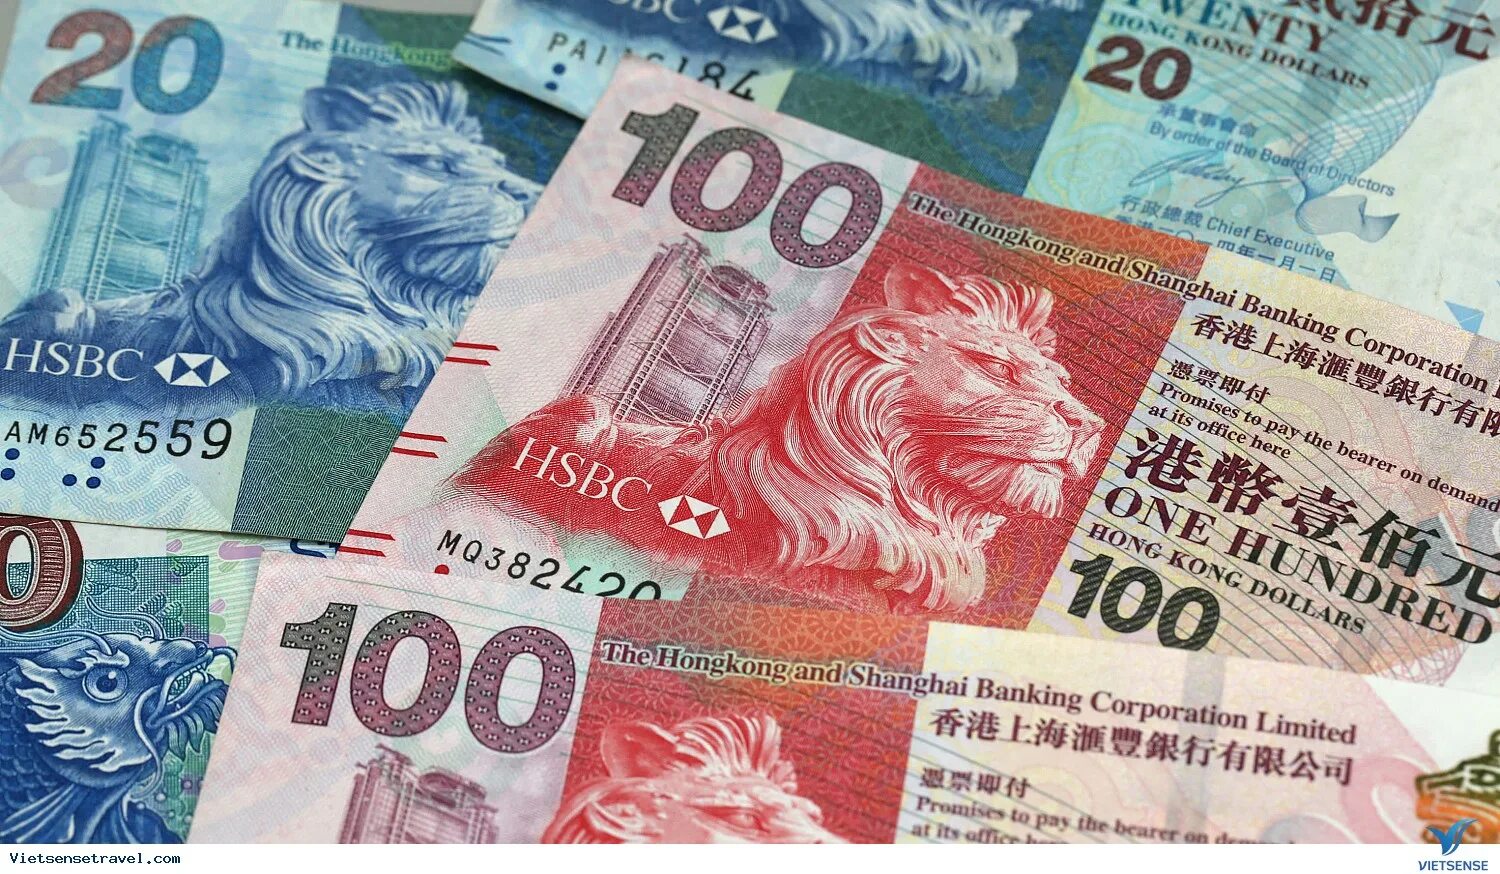 Hk в рублях. Деньги Гонконга. Гонконг денежные купюры. Гонконгский доллар. Гонконгский доллар, валюта Гонконга..